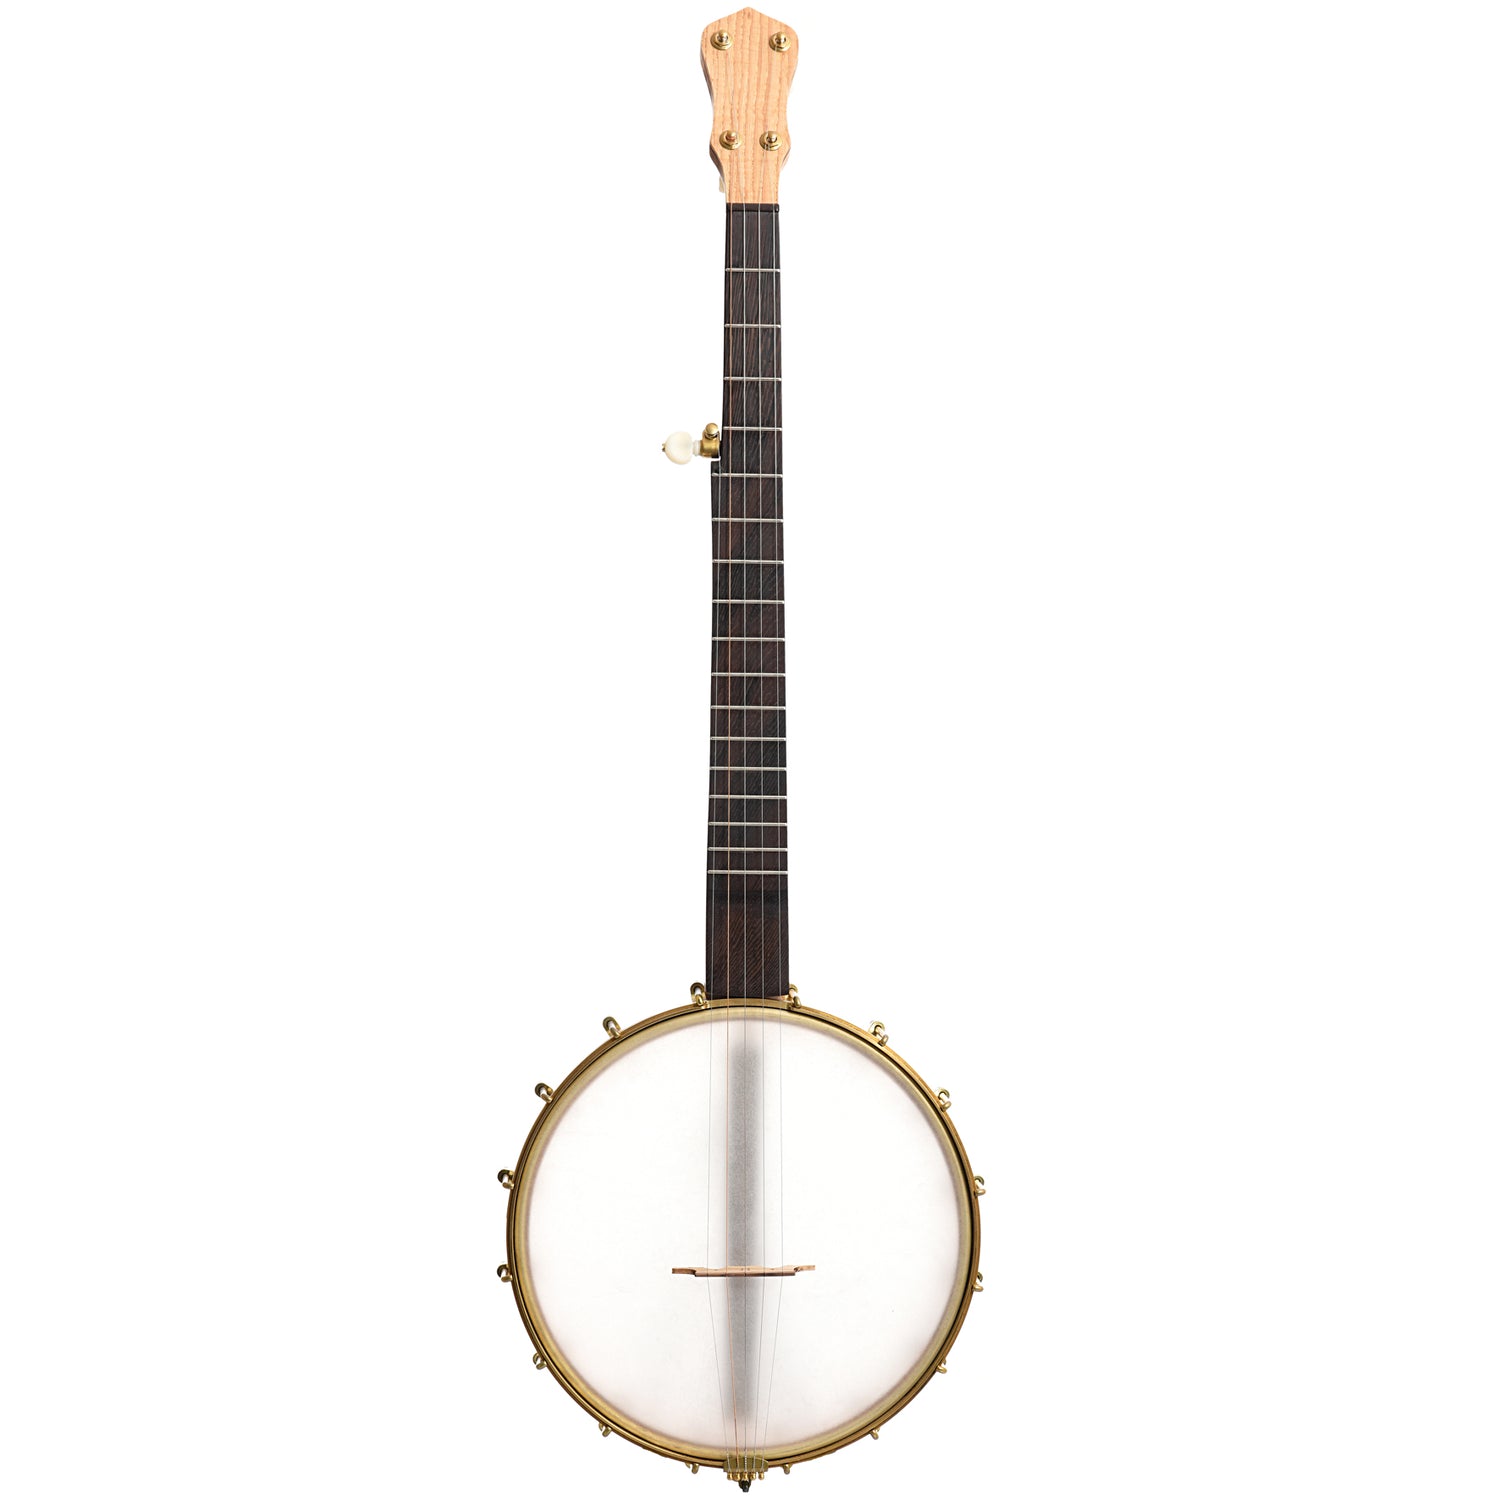 Image 2 of Dogwood Banjo Co. 11" Openback Banjo, No. 175 - SKU# DW175 : Product Type Open Back Banjos : Elderly Instruments